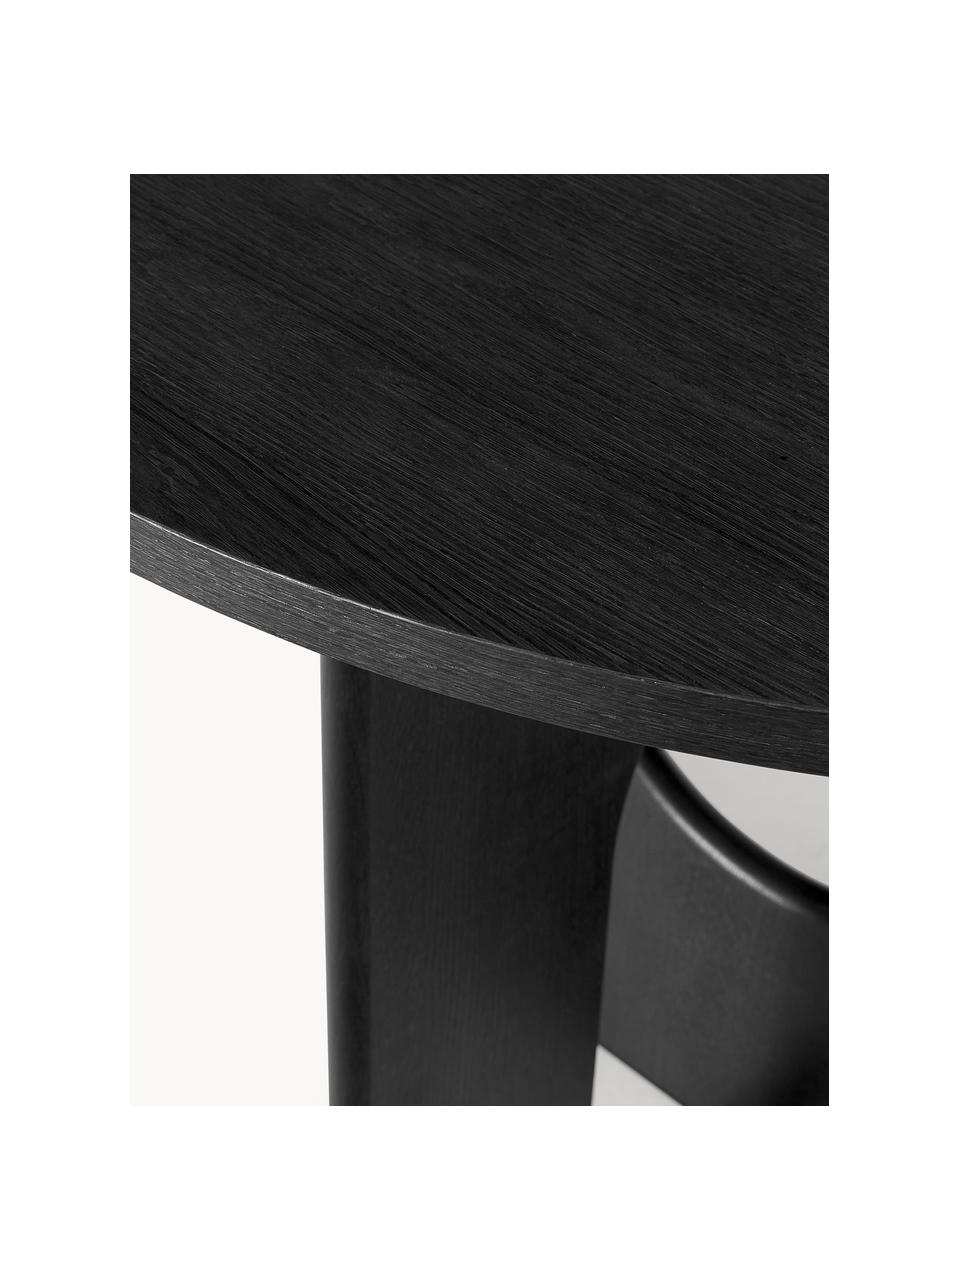 Runder Esstisch Apollo, in verschiedenen Größen, Tischplatte: Eichenholzfurnier, lackie, Beine: Eichenholz, lackiert, Met, Eichenholz, schwarz lackiert, Ø 100 cm